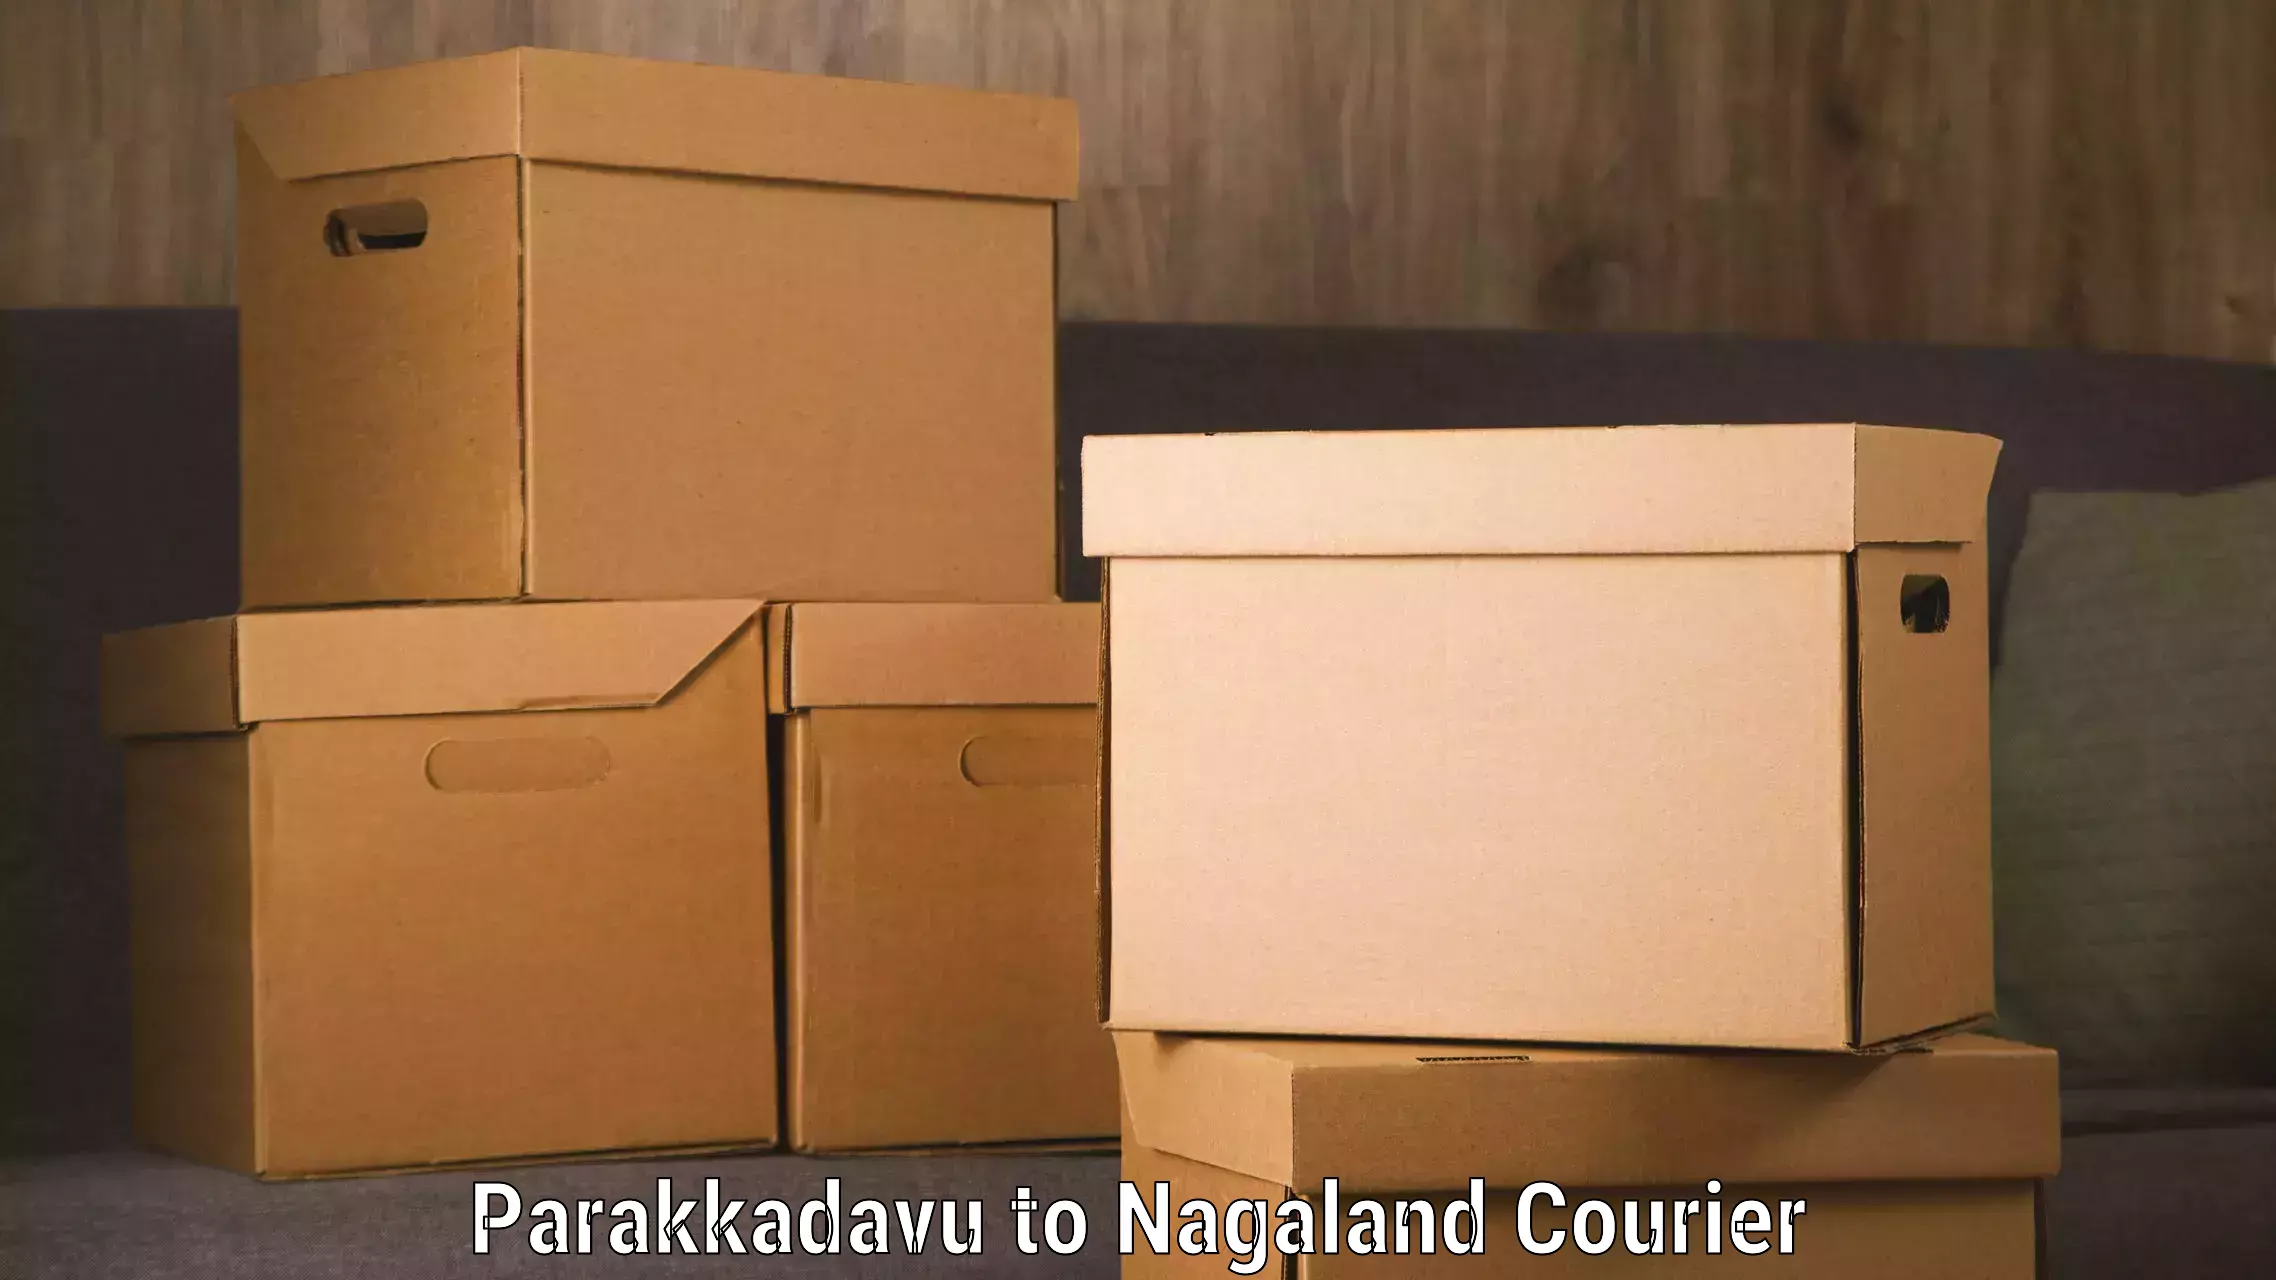 24-hour delivery options Parakkadavu to Nagaland